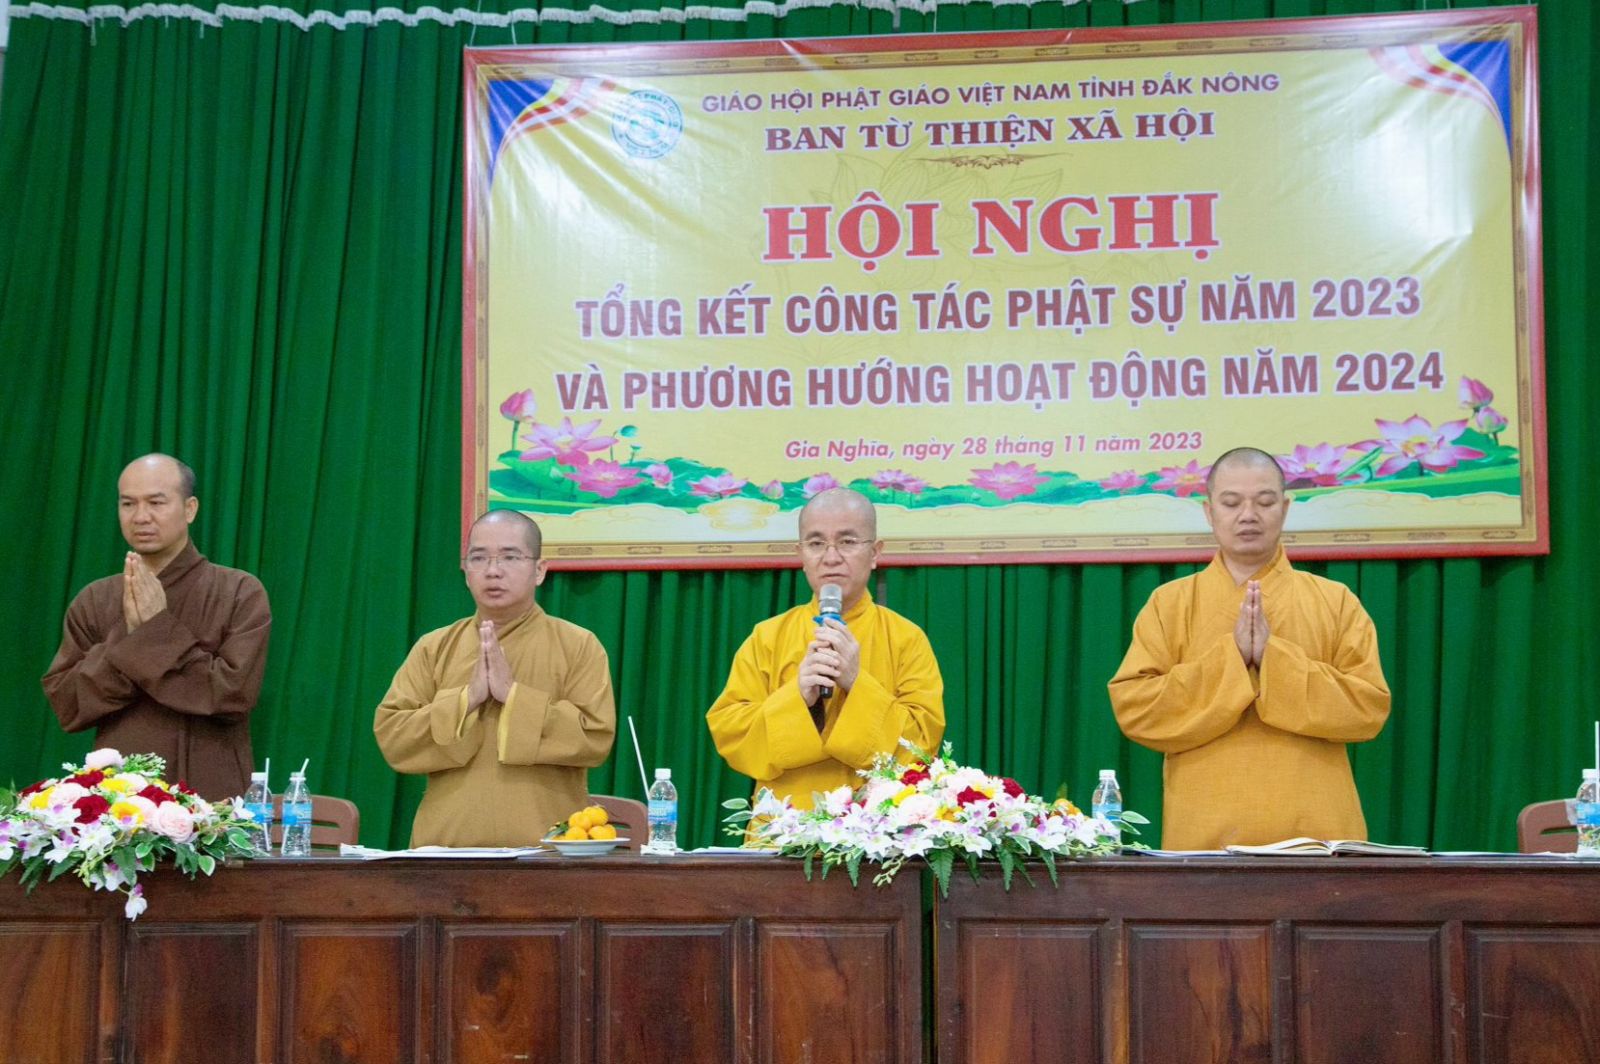 Đăk Nông: Ban Từ thiện Xã hội Phật giáo tỉnh tổ chức Hội nghị Tổng kết Công tác Phật sự năm 2023.